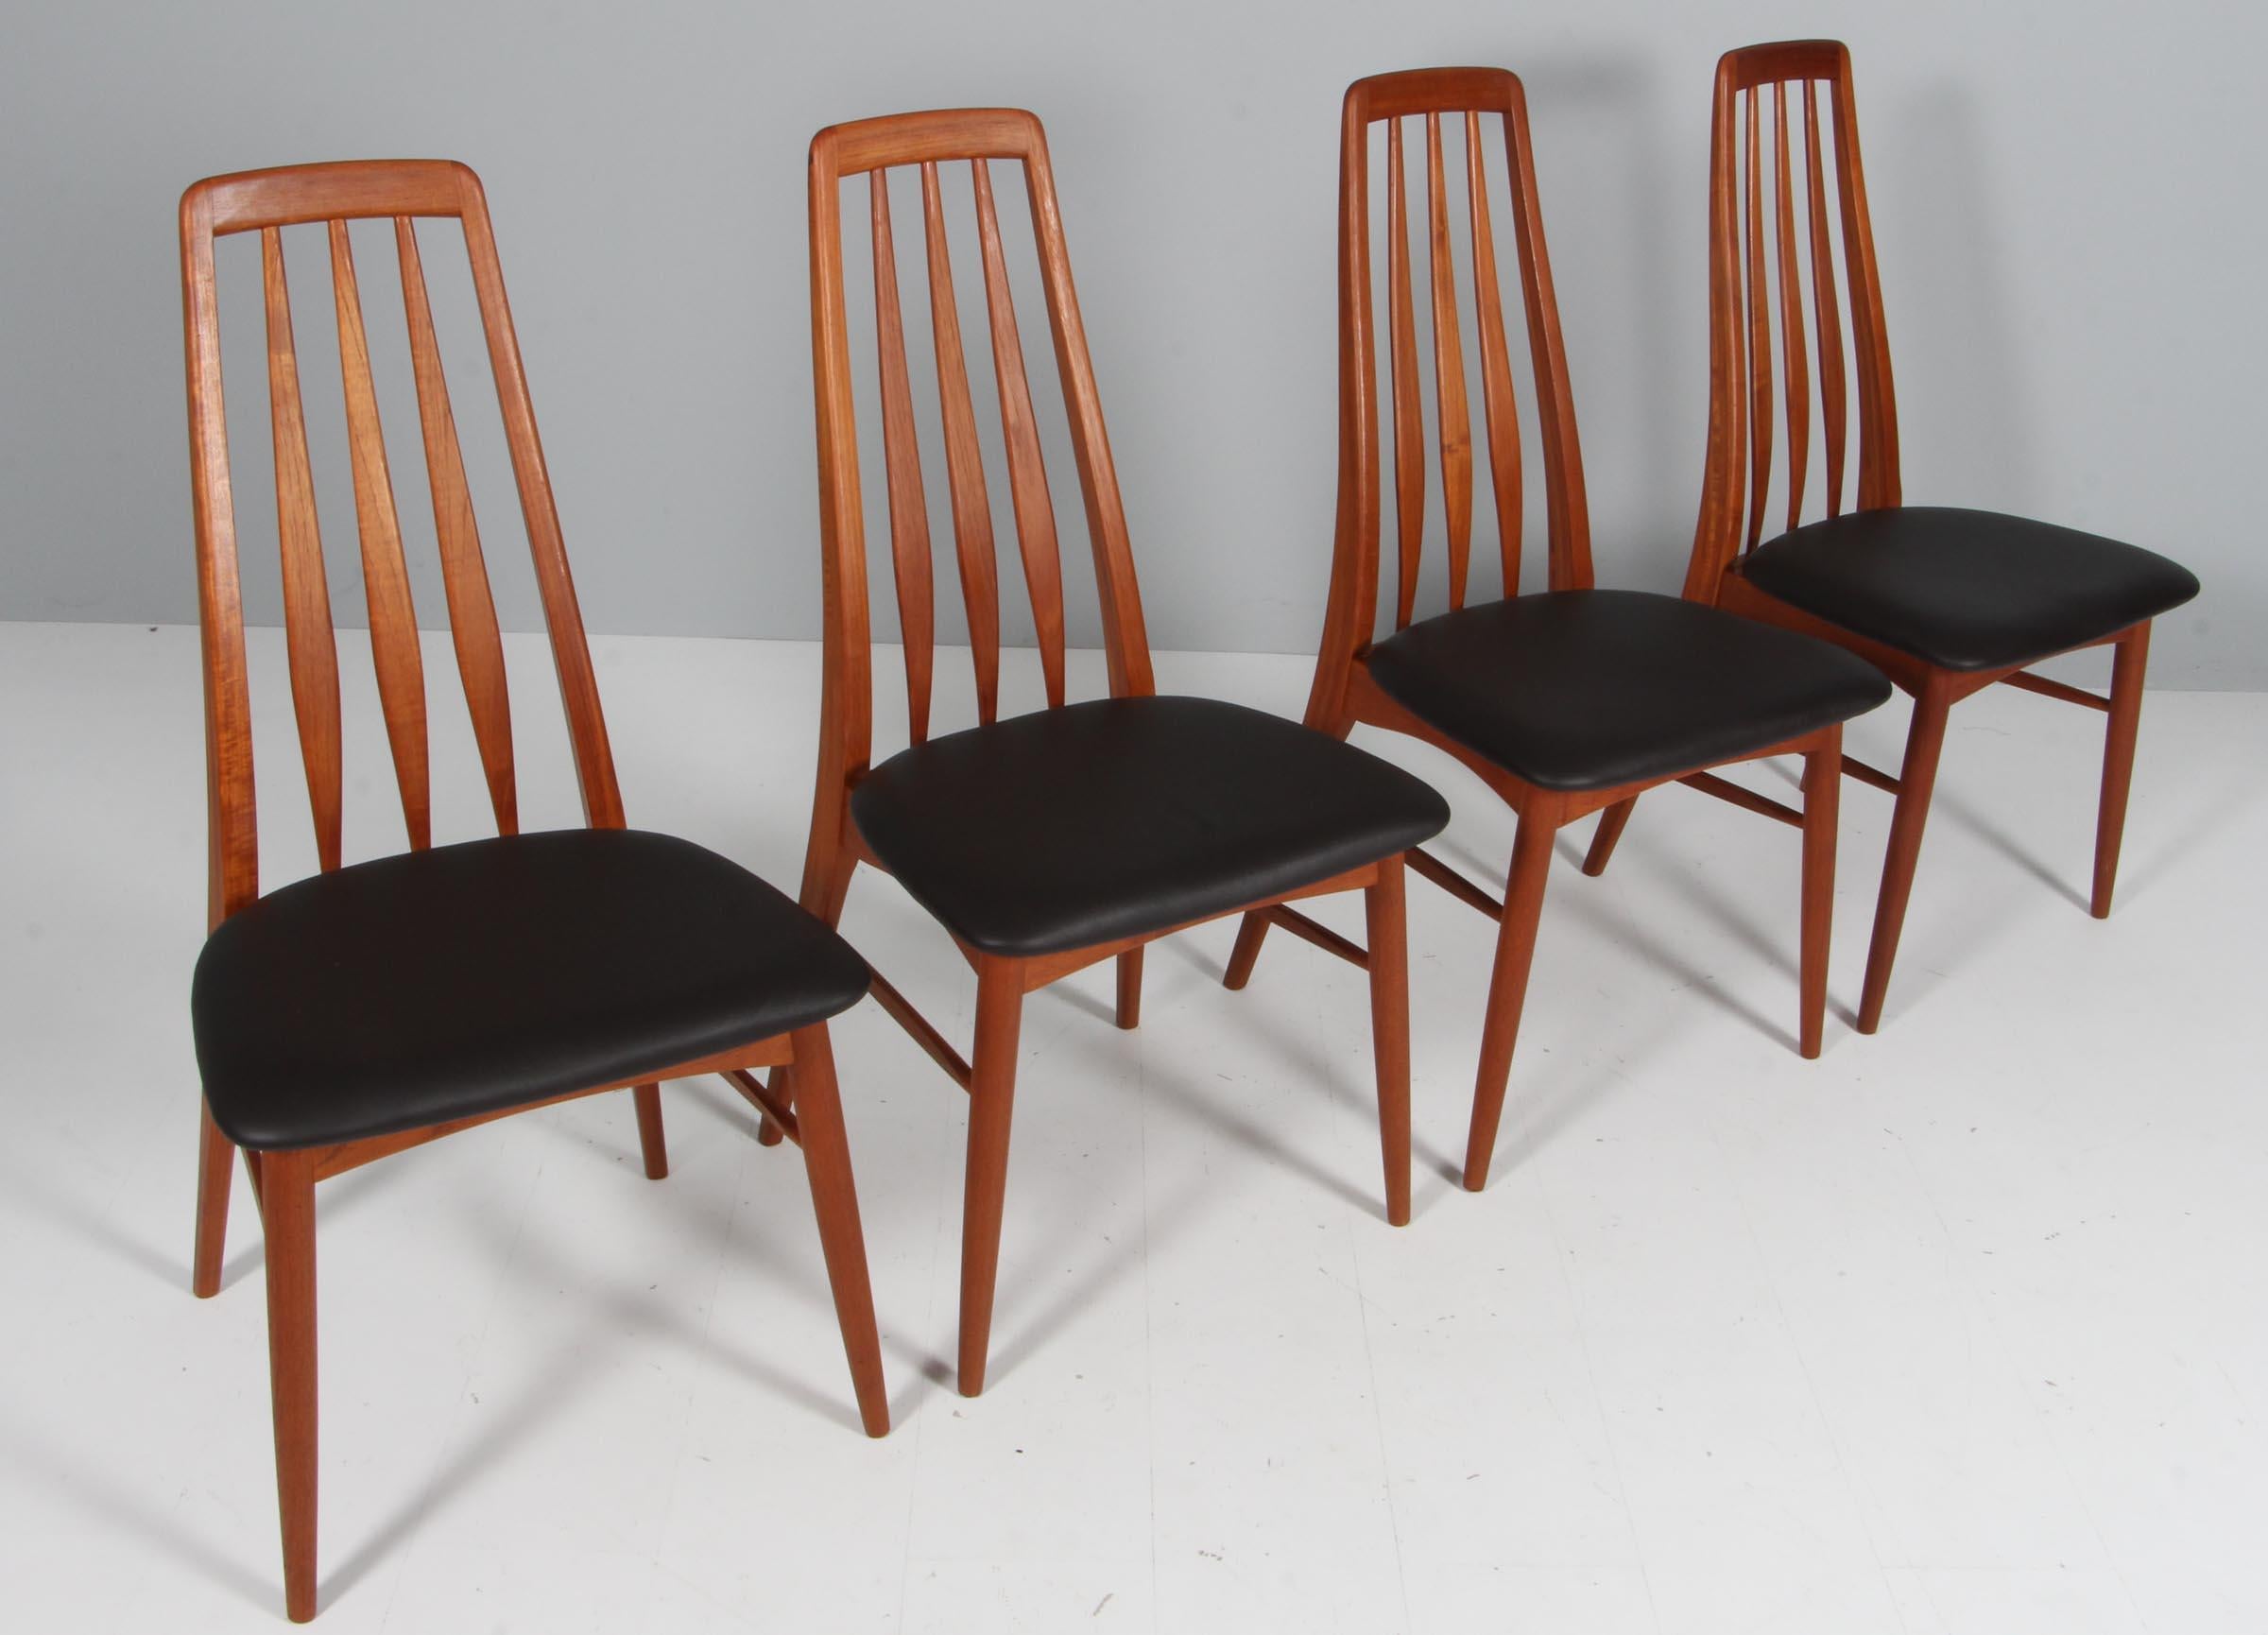 Niels Koefoed dining chairs made in solid teak.

New upholstered in dark brown Savanne leather from Arne Sørensen.

Model Eva, made by Niels Koefoeds Møbelfabrik Hornslet, 1960s.

